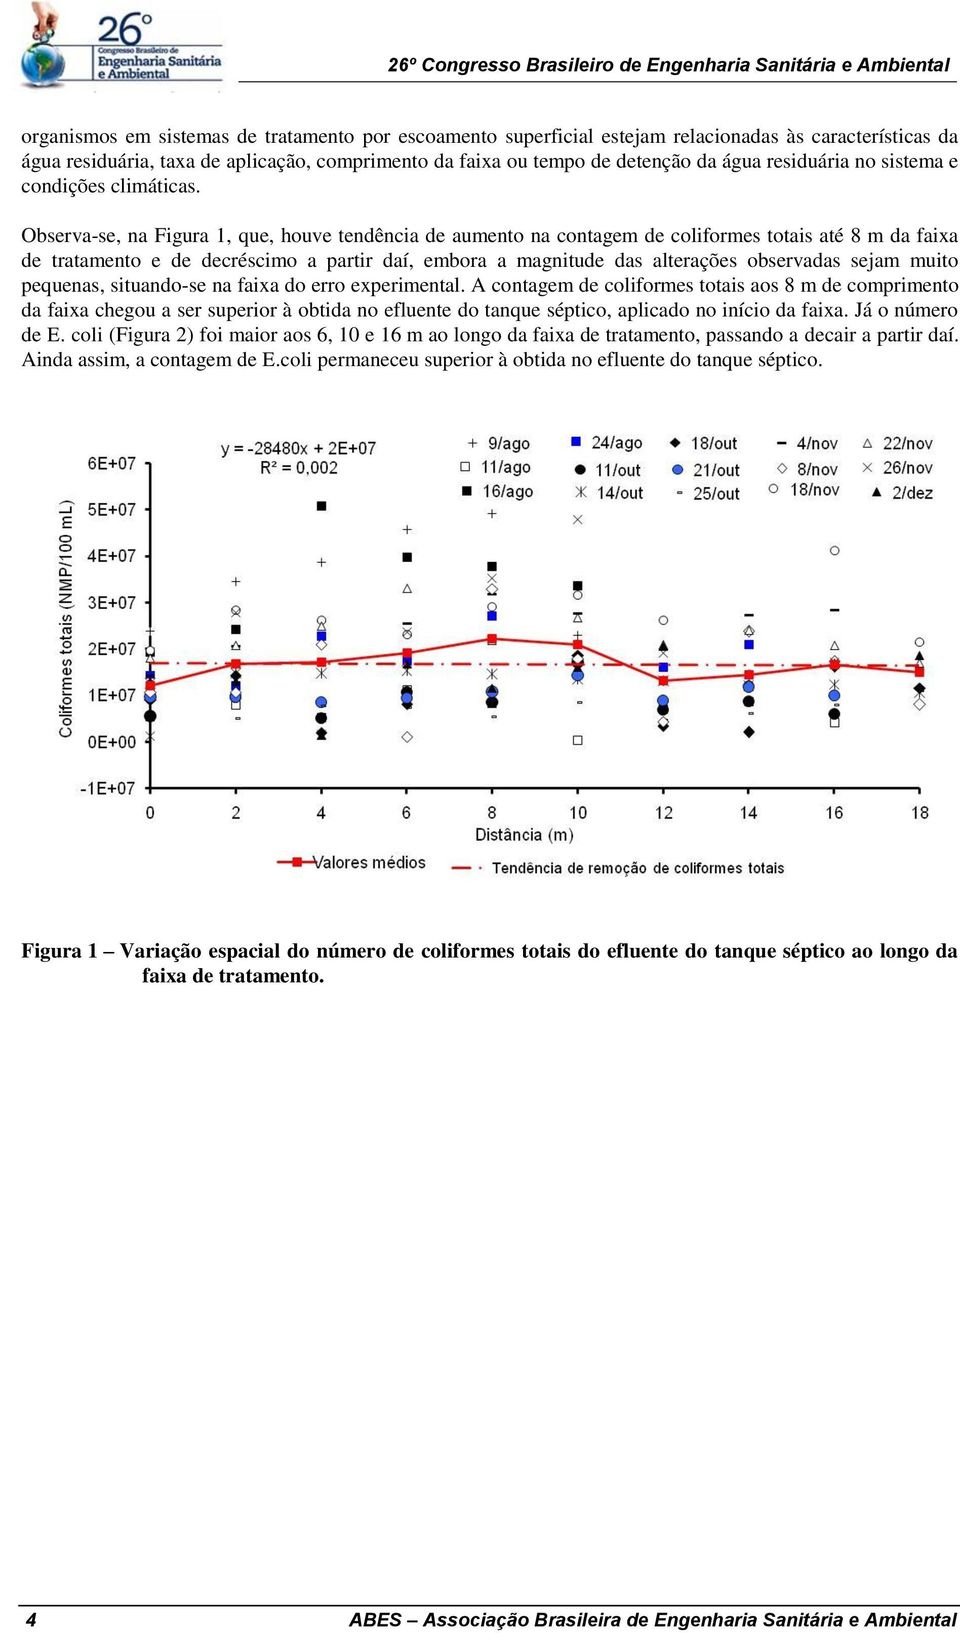 Observa-se, na Figura 1, que, houve tendência de aumento na contagem de coliformes totais até 8 m da faixa de tratamento e de decréscimo a partir daí, embora a magnitude das alterações observadas